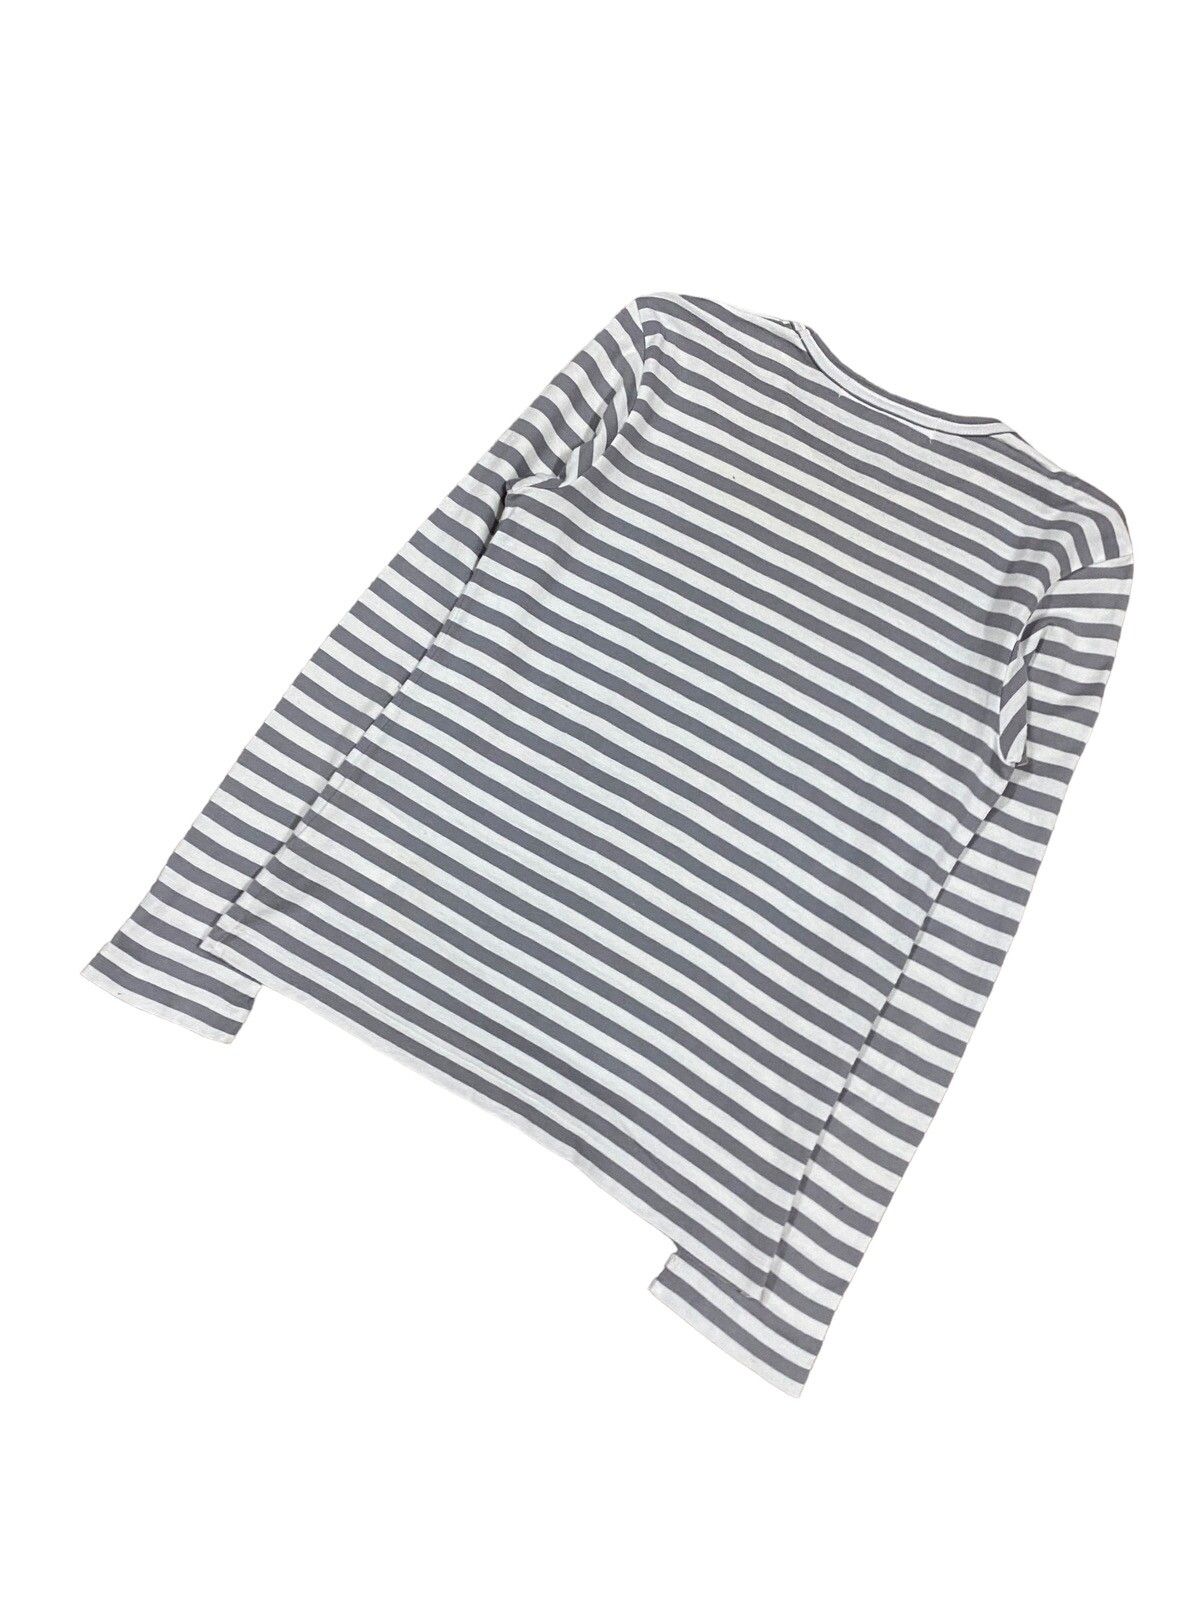 AD2015 Comme Des Garçons Play Striped Longsleeve Shirt - 11